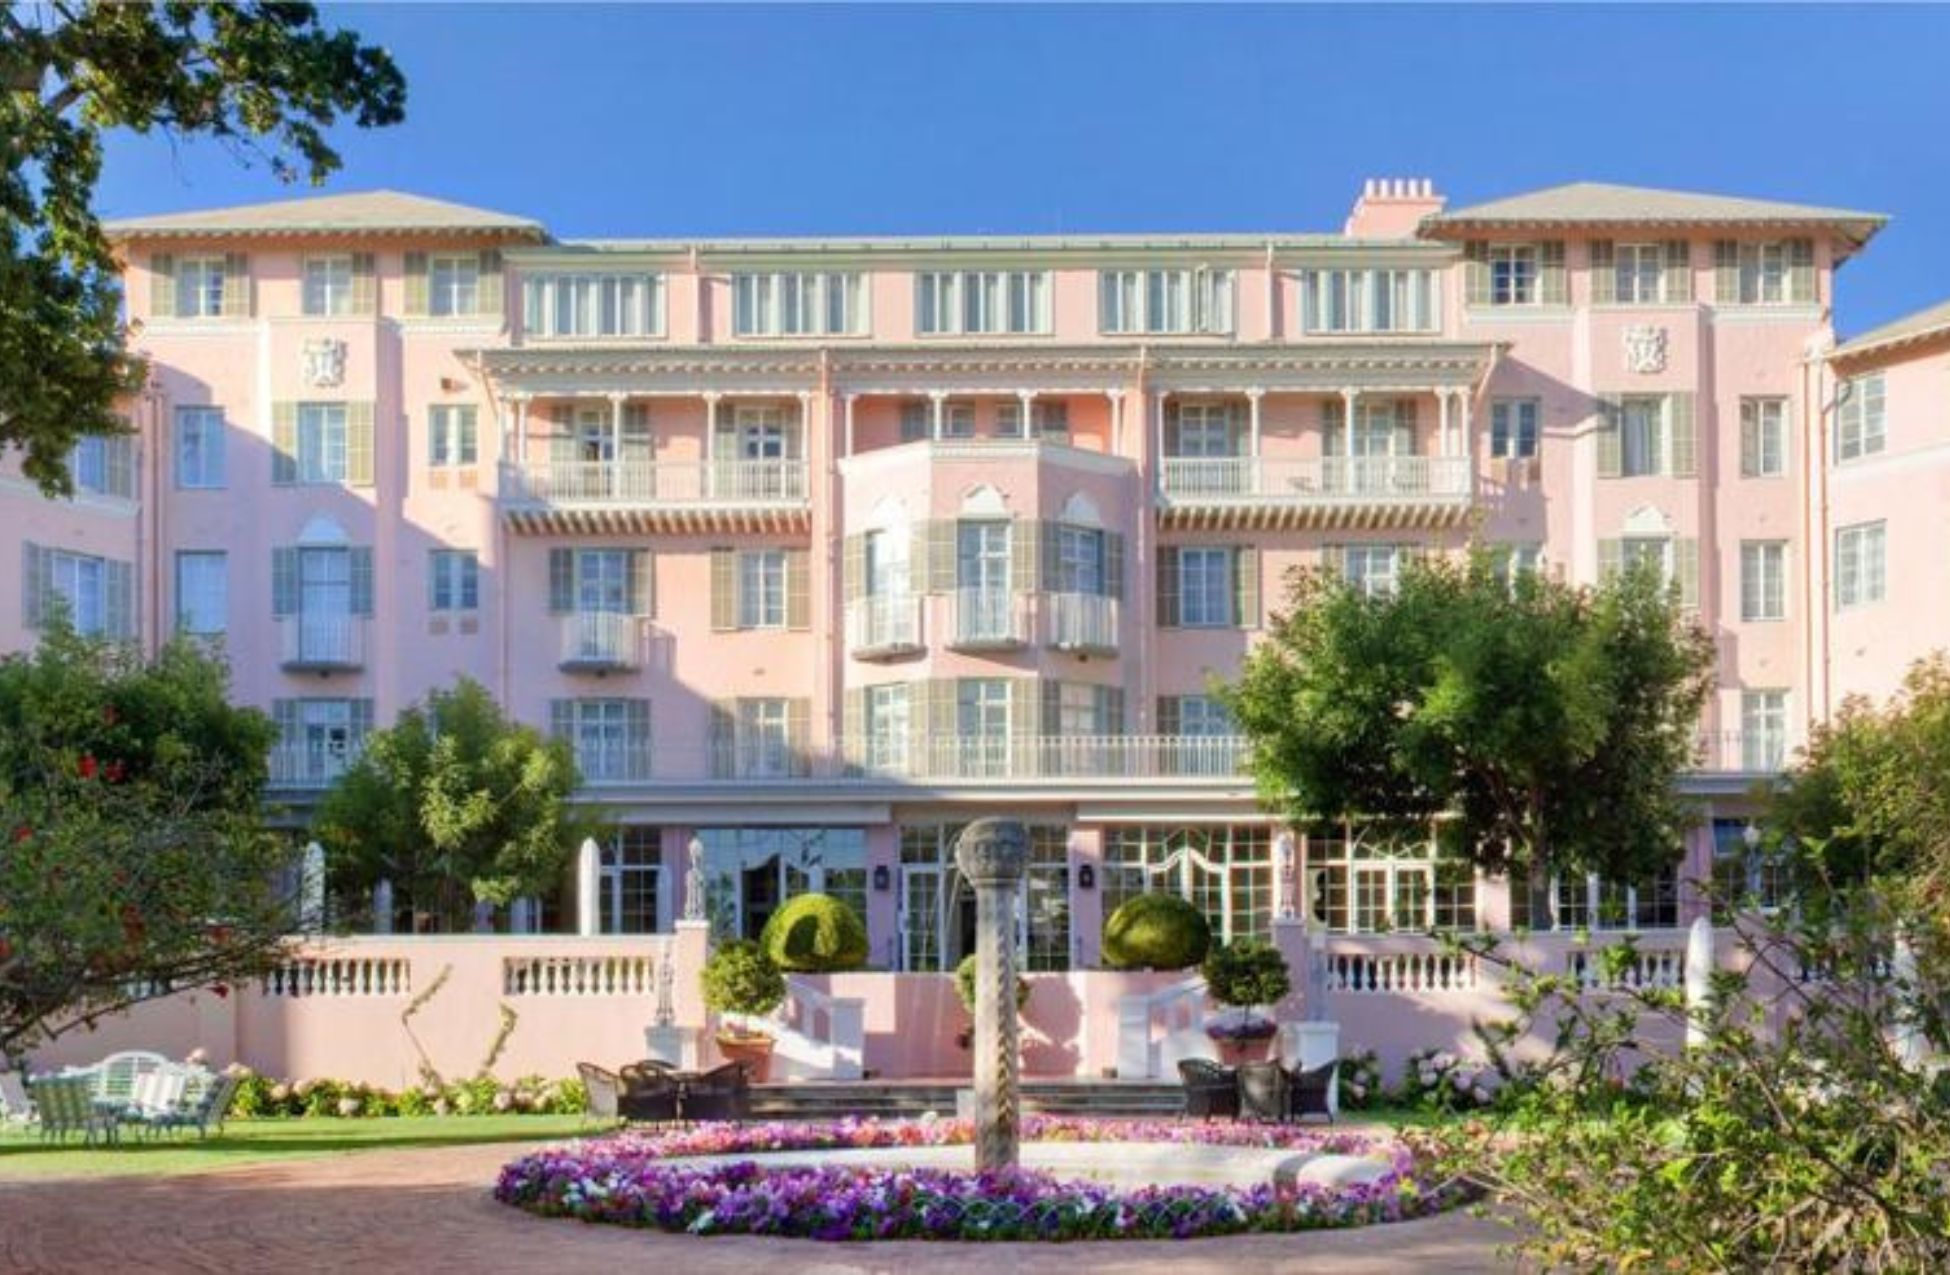 Belmond Mount Nelson Hotel - Best Hotels In Cape Town